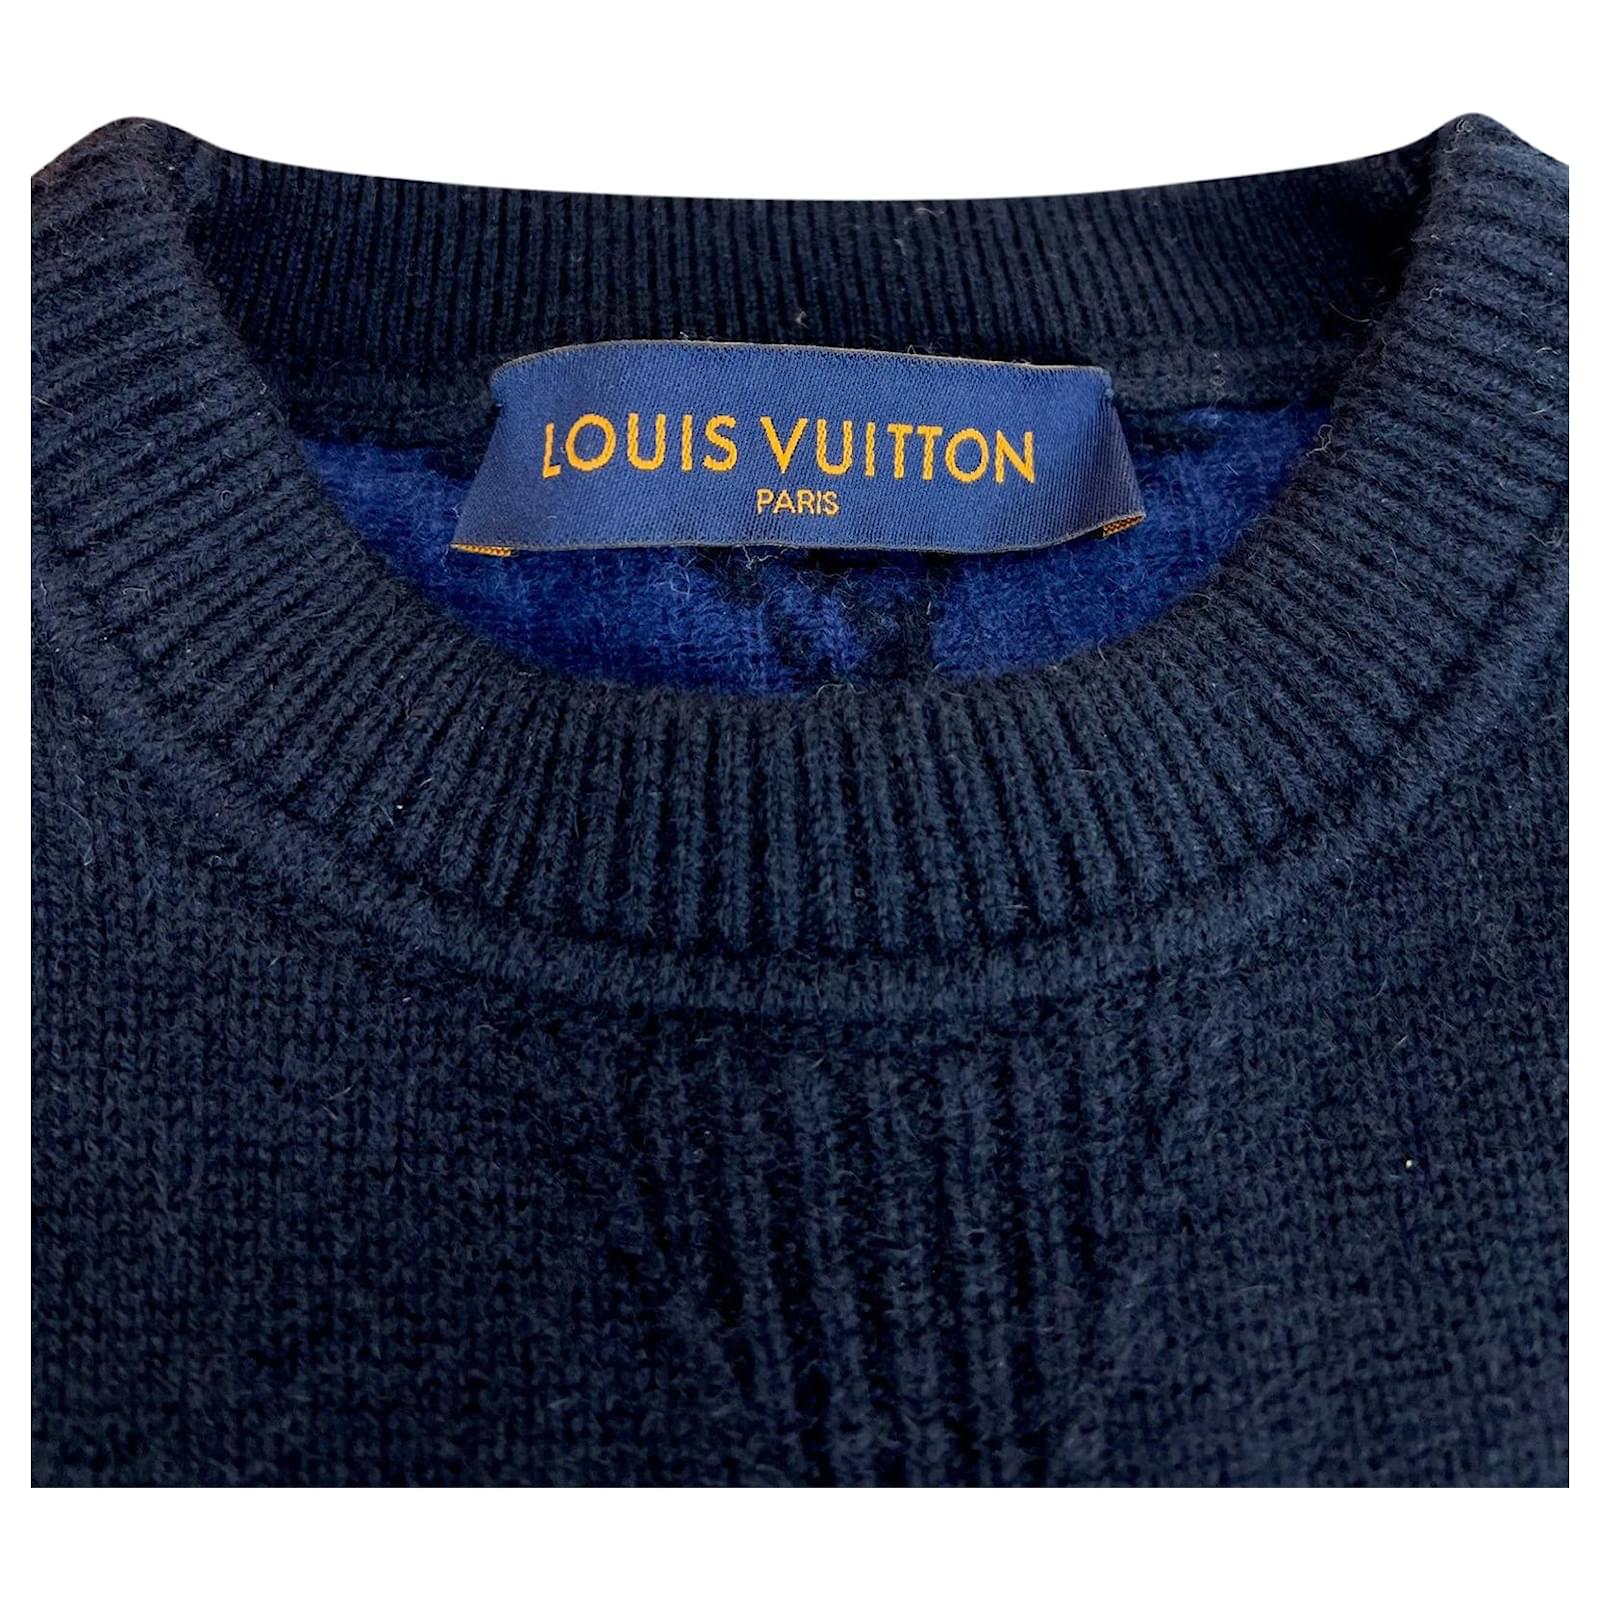 Sweatshirt Louis Vuitton Navy size M International in Cotton  29368872